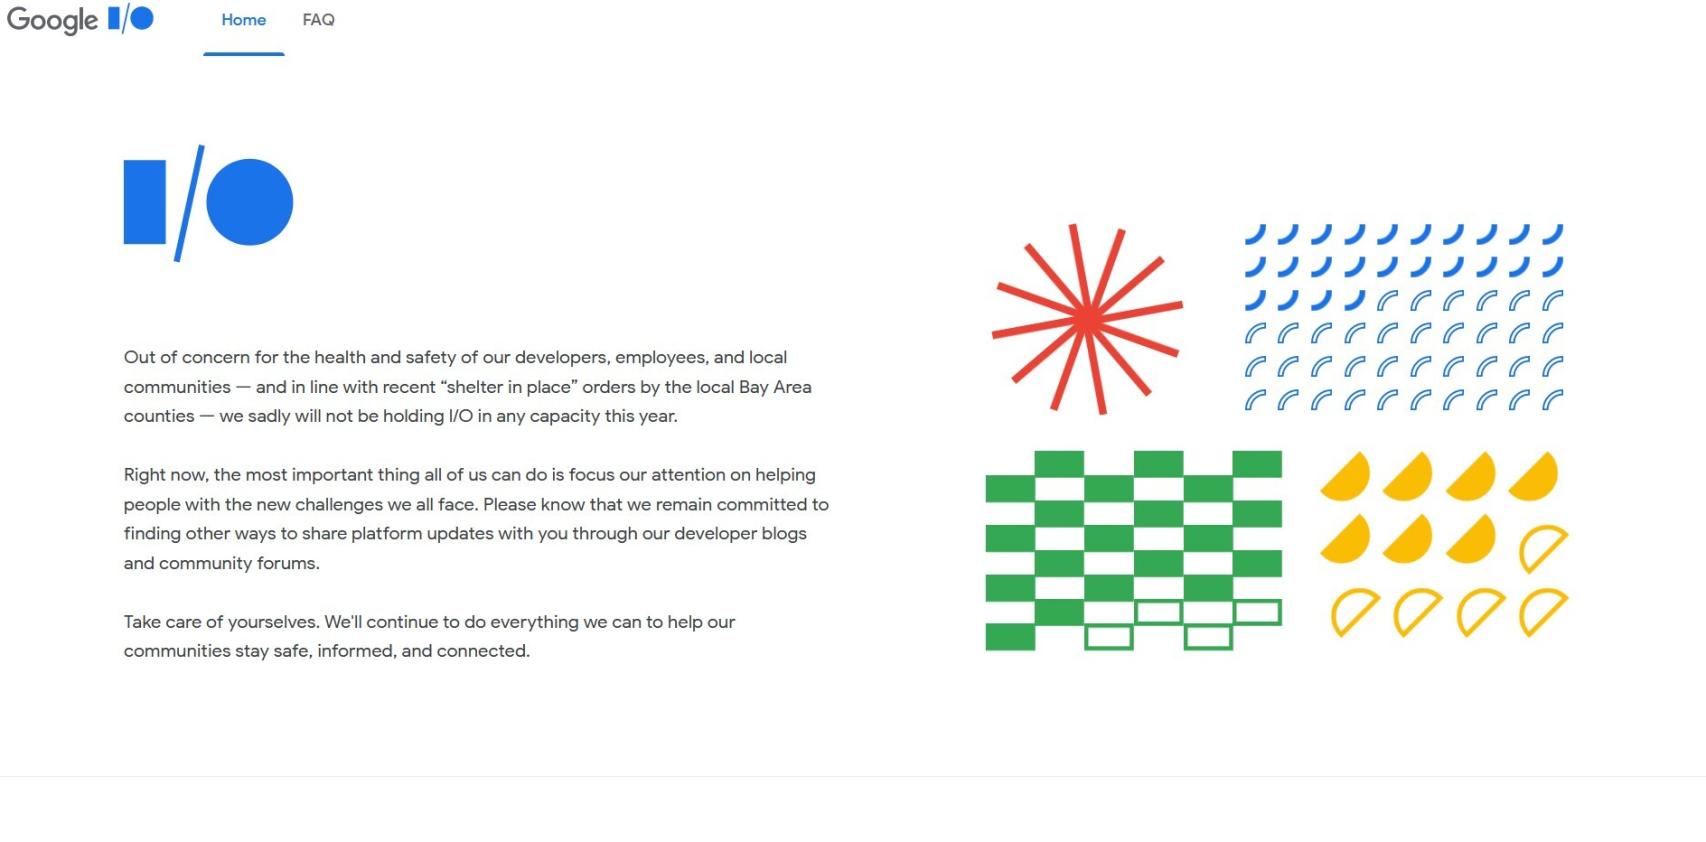 Página web de Google I/O mostrando el anuncio de la cancelación